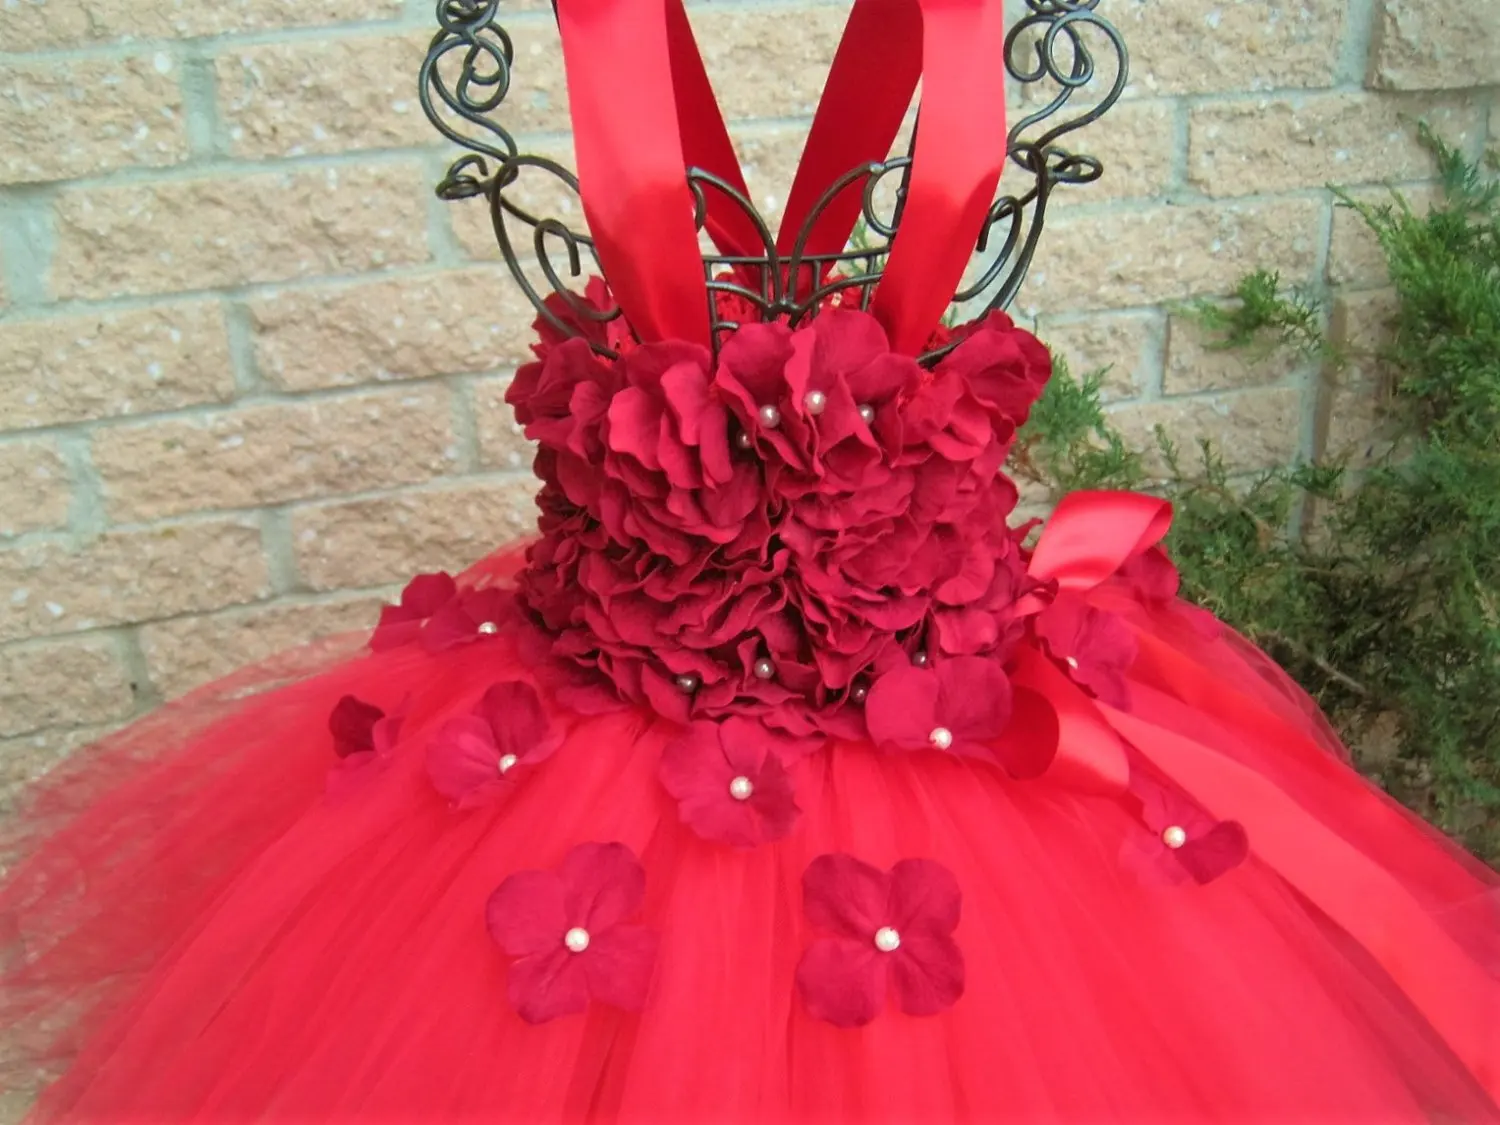 11 видов стилей платье-пачка с цветами и гортензией для девочек фатиновое платье Принцесса-фея цветы Детские платья на свадьбу и день рождения для девочек, От 1 до 14 лет